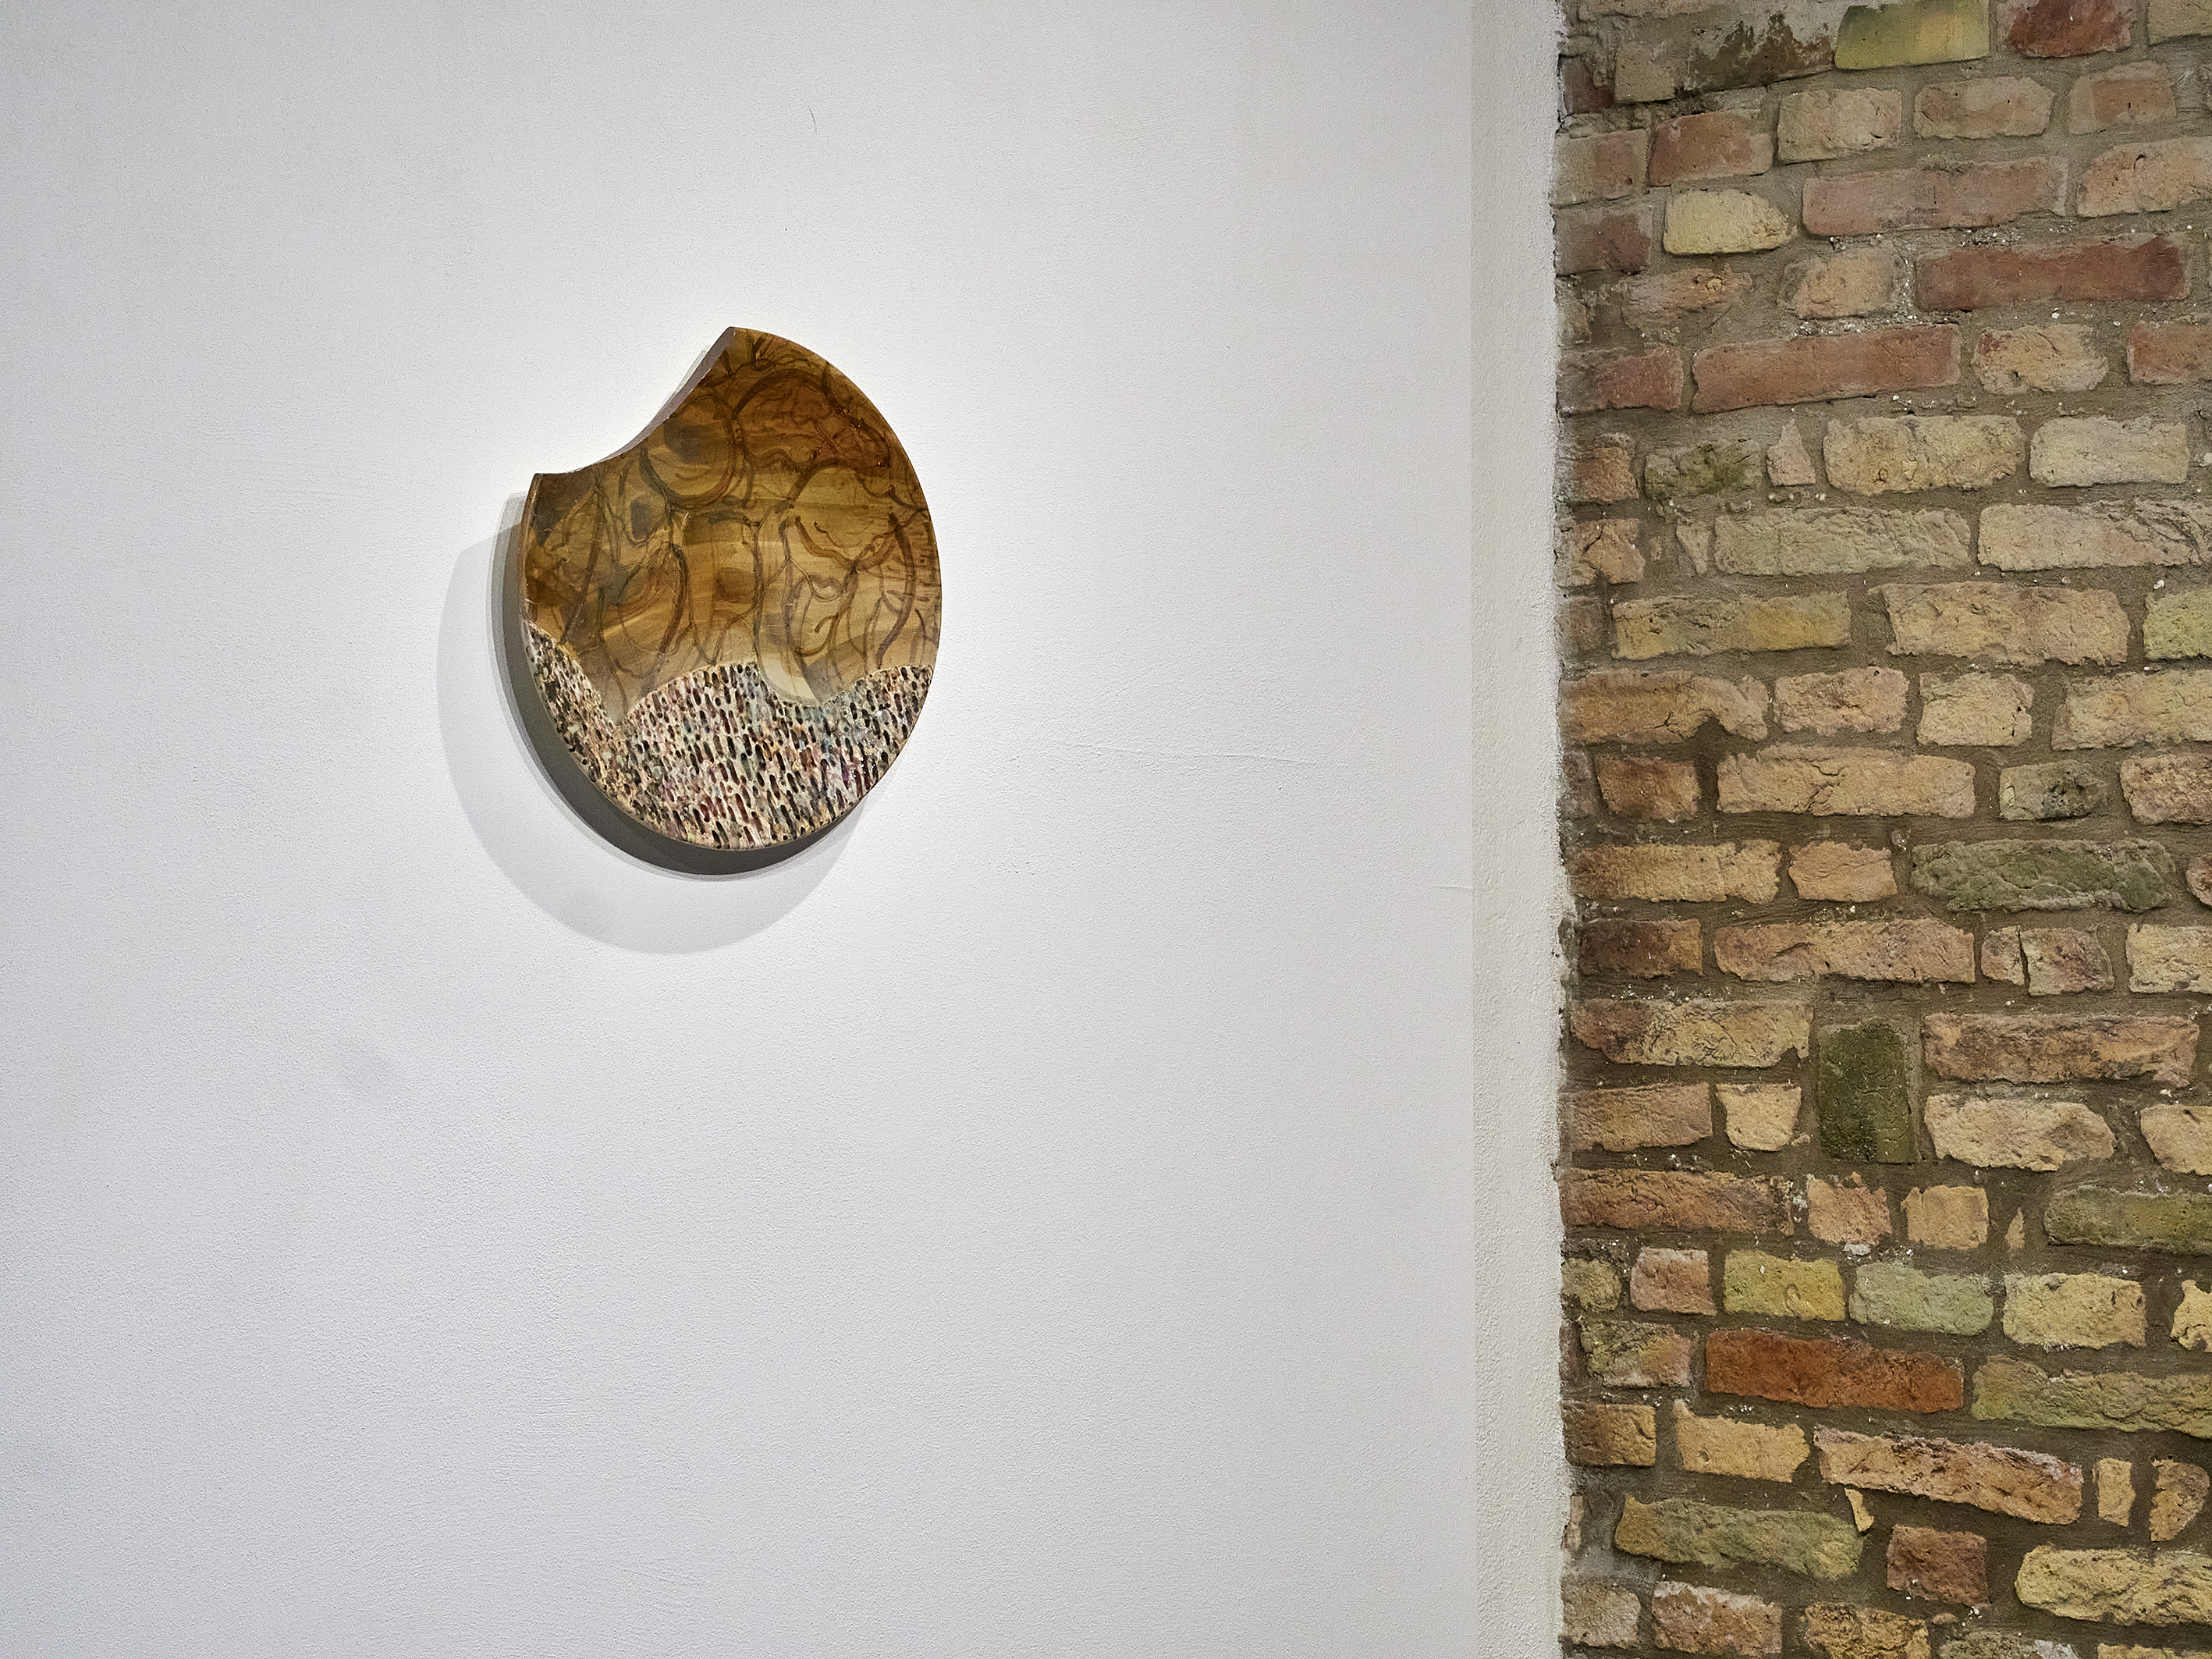 ANEMONI, Fondazione Sabe per l'Arte di Ravenna, installation view, ph. Daniele Casadio, Ravenna